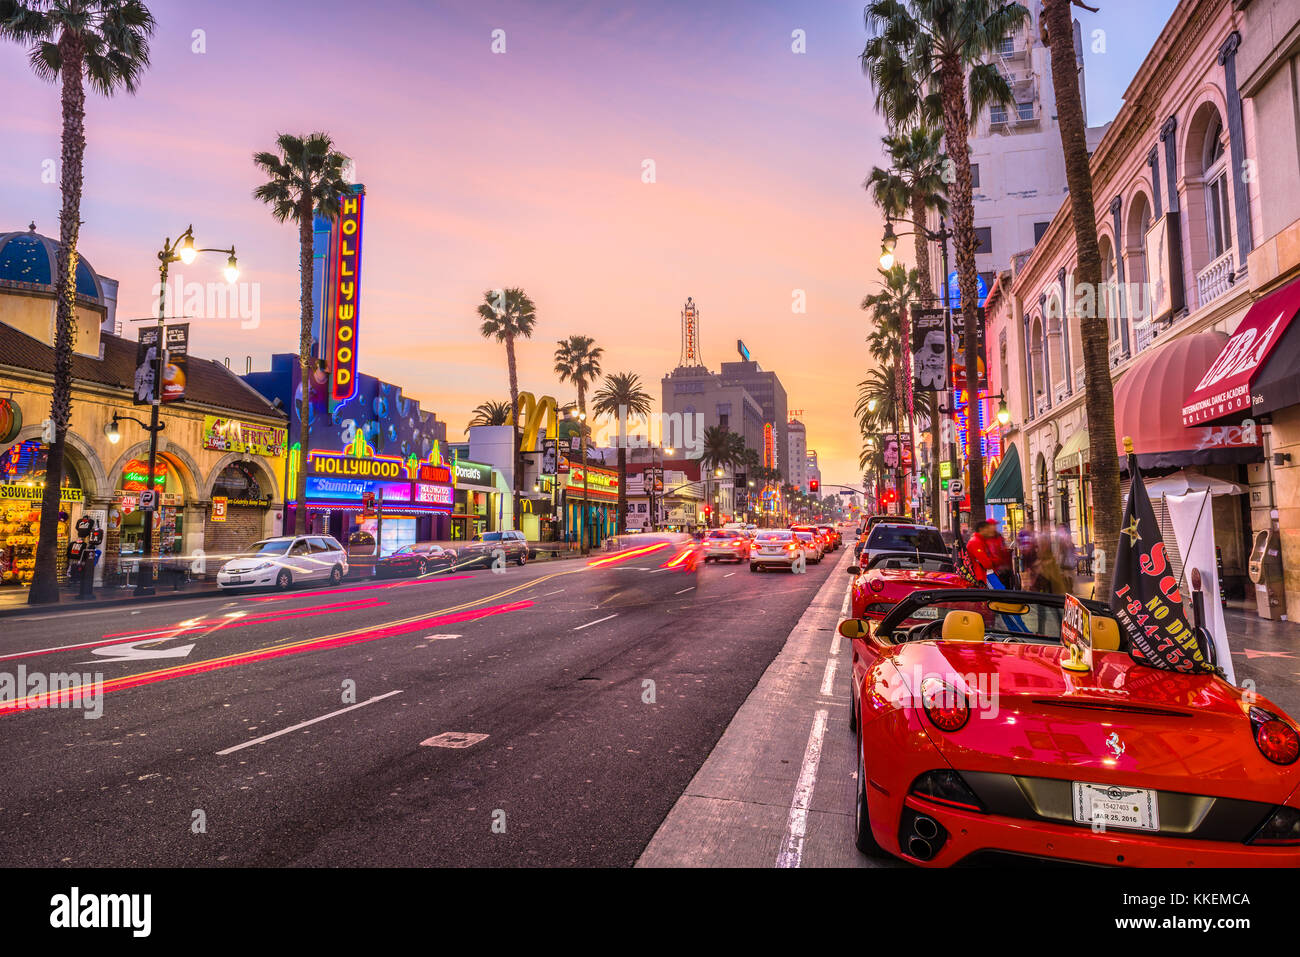 LOS ANGELES, CALIFORNIE - Le 1 mars 2016 : Le trafic sur Hollywood Boulevard au crépuscule. Le quartier des théâtres est une célèbre attraction touristique. Banque D'Images